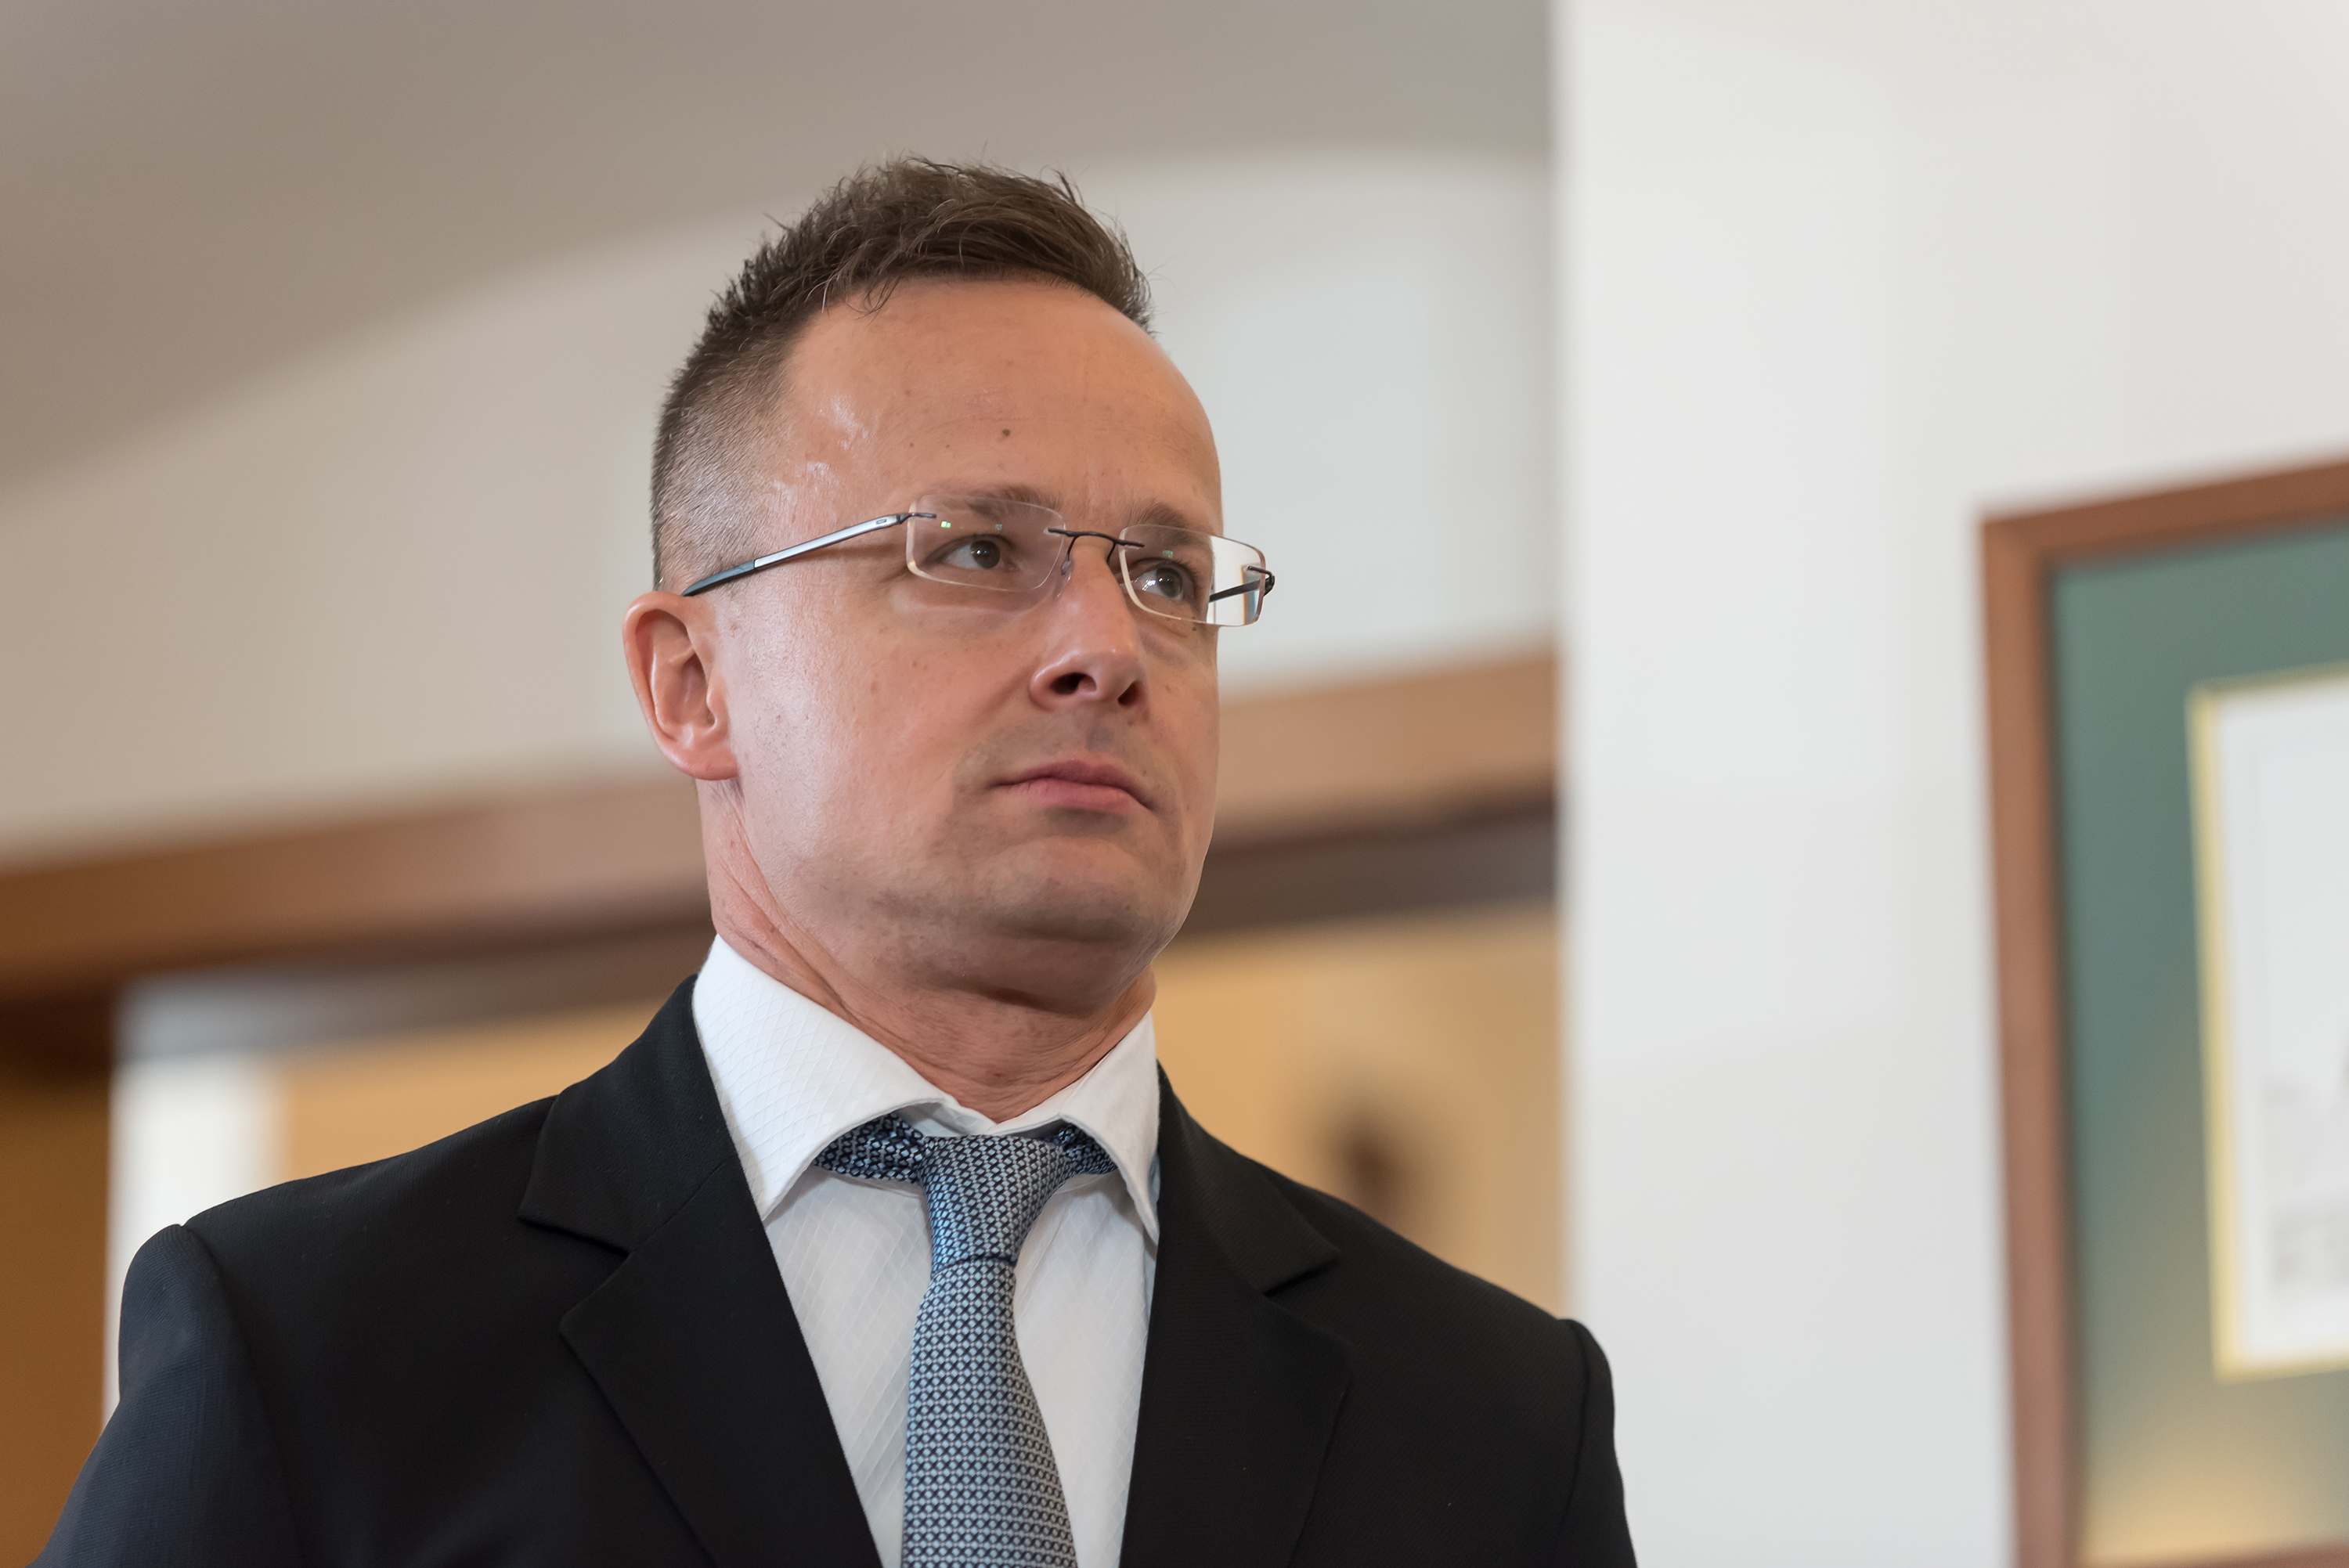 Hungary’s Minister of Foreign Affairs and Trade Péter Szijjártó.